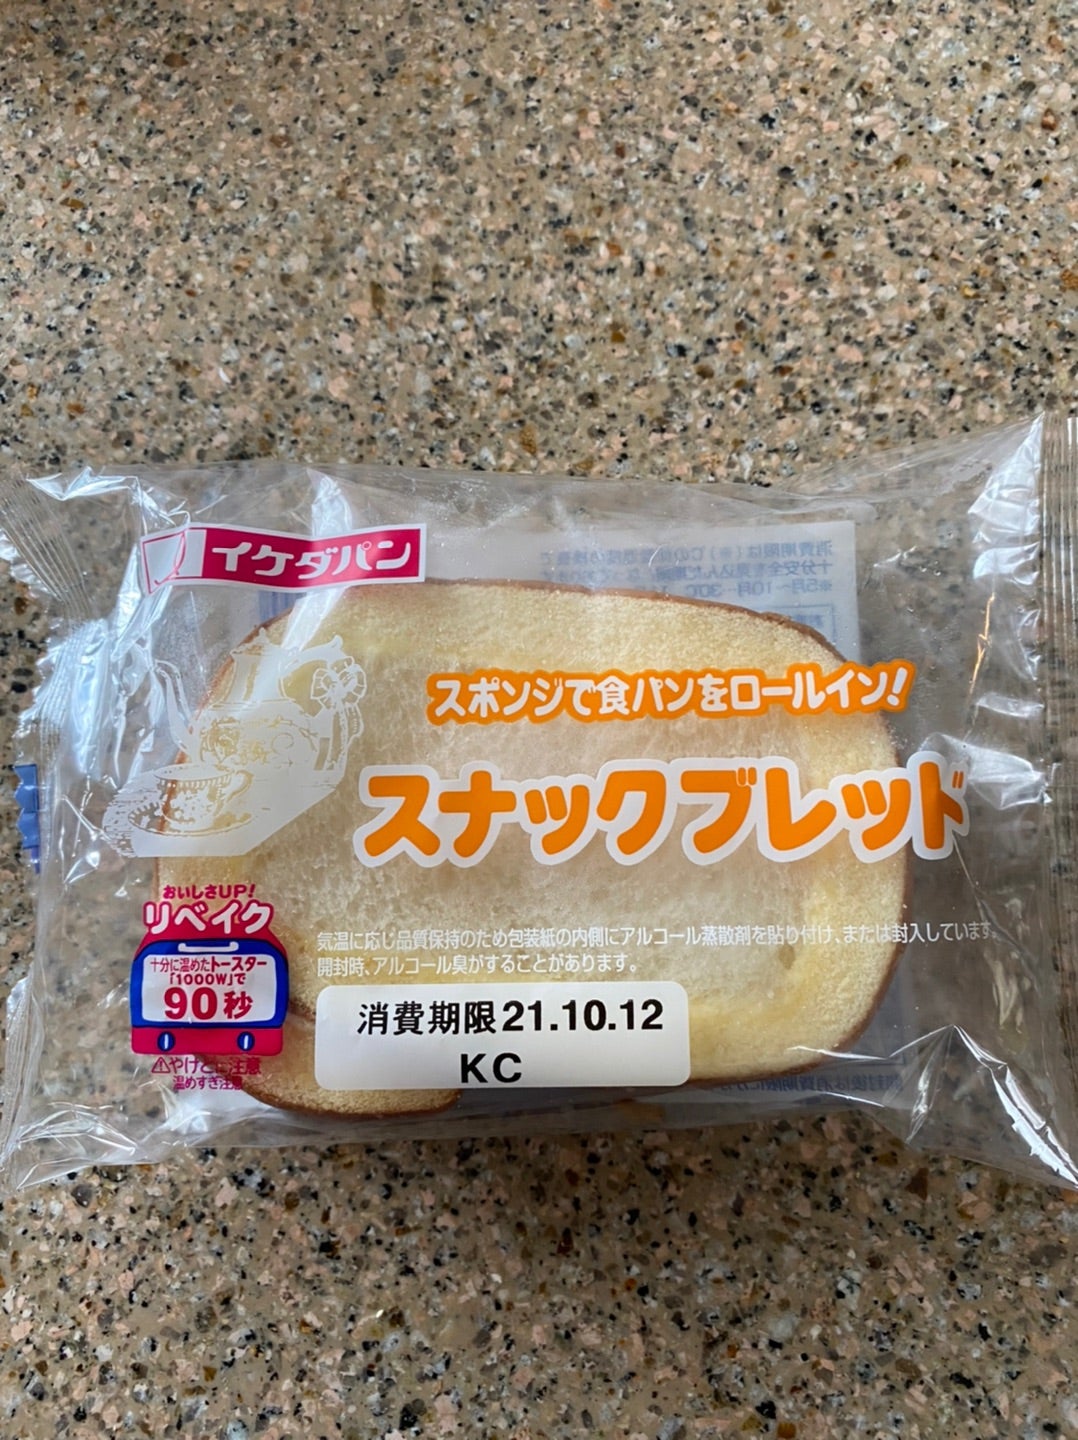 ブレッド スナック スポンジケーキの中は……なんと食パン!? 鹿児島県姶良市の「スナックブレッド」